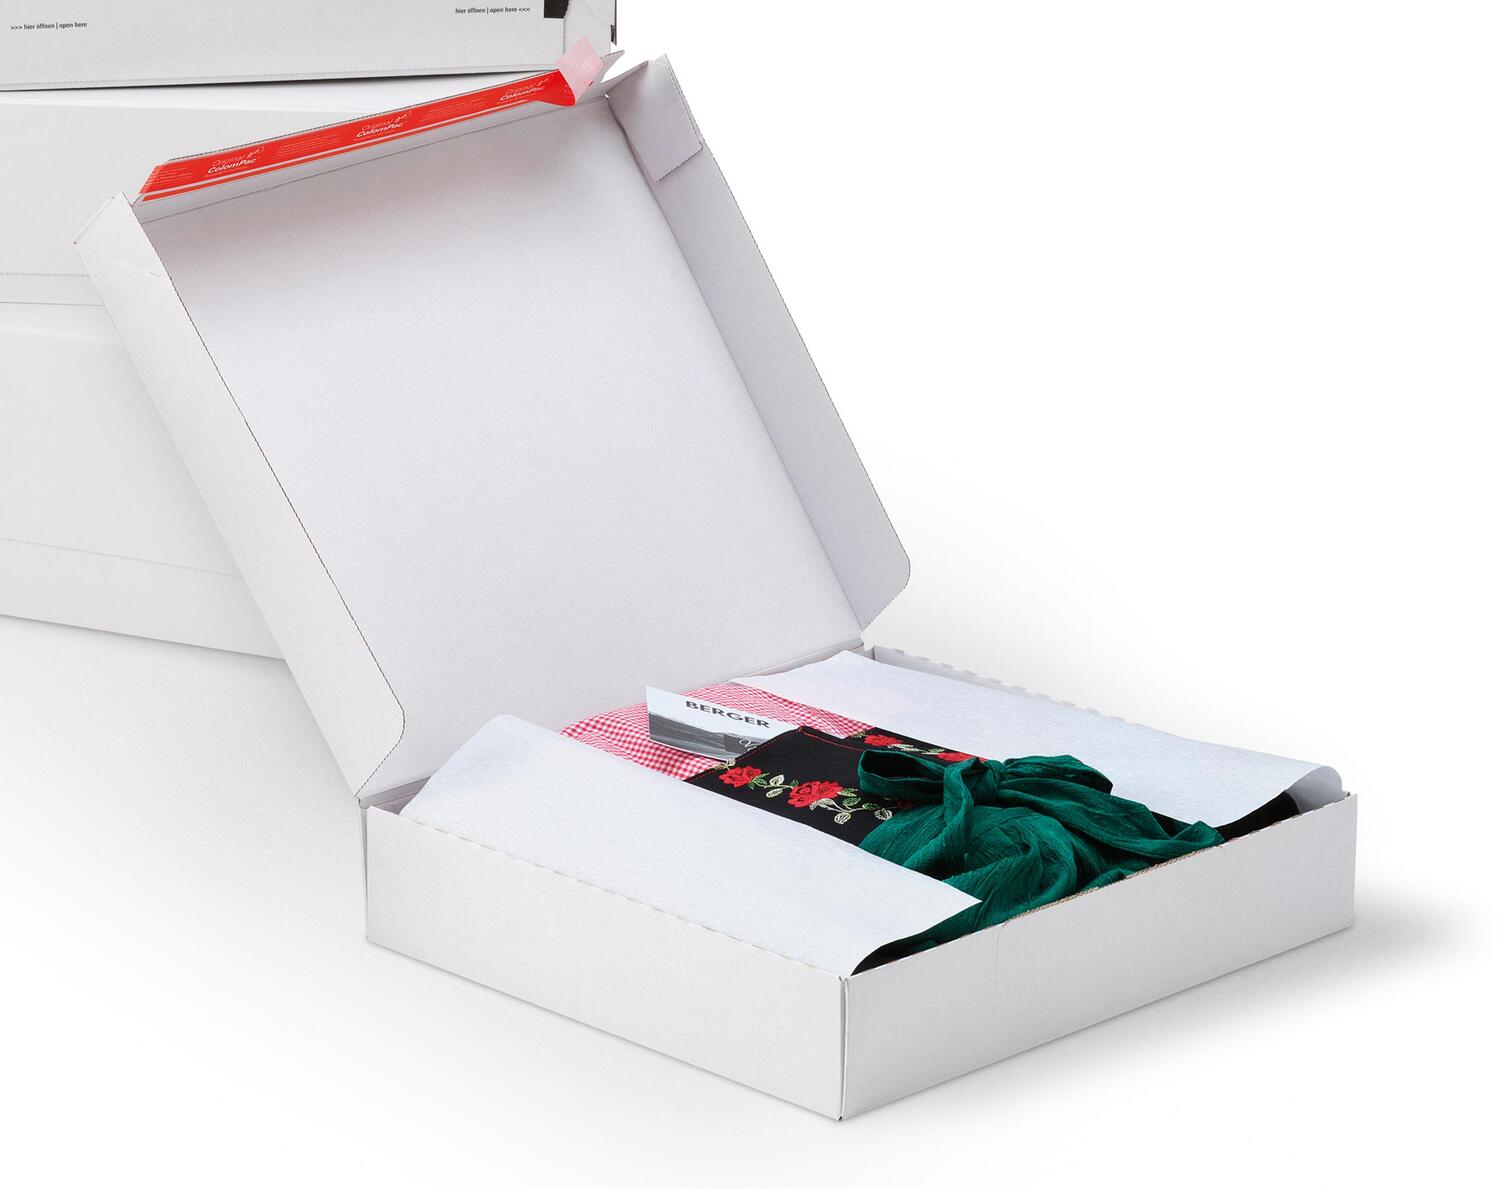 ColomPac Fashionbox 455 x 390 x 200mm mit Selbstklebeverschluss & Aufreifaden wei